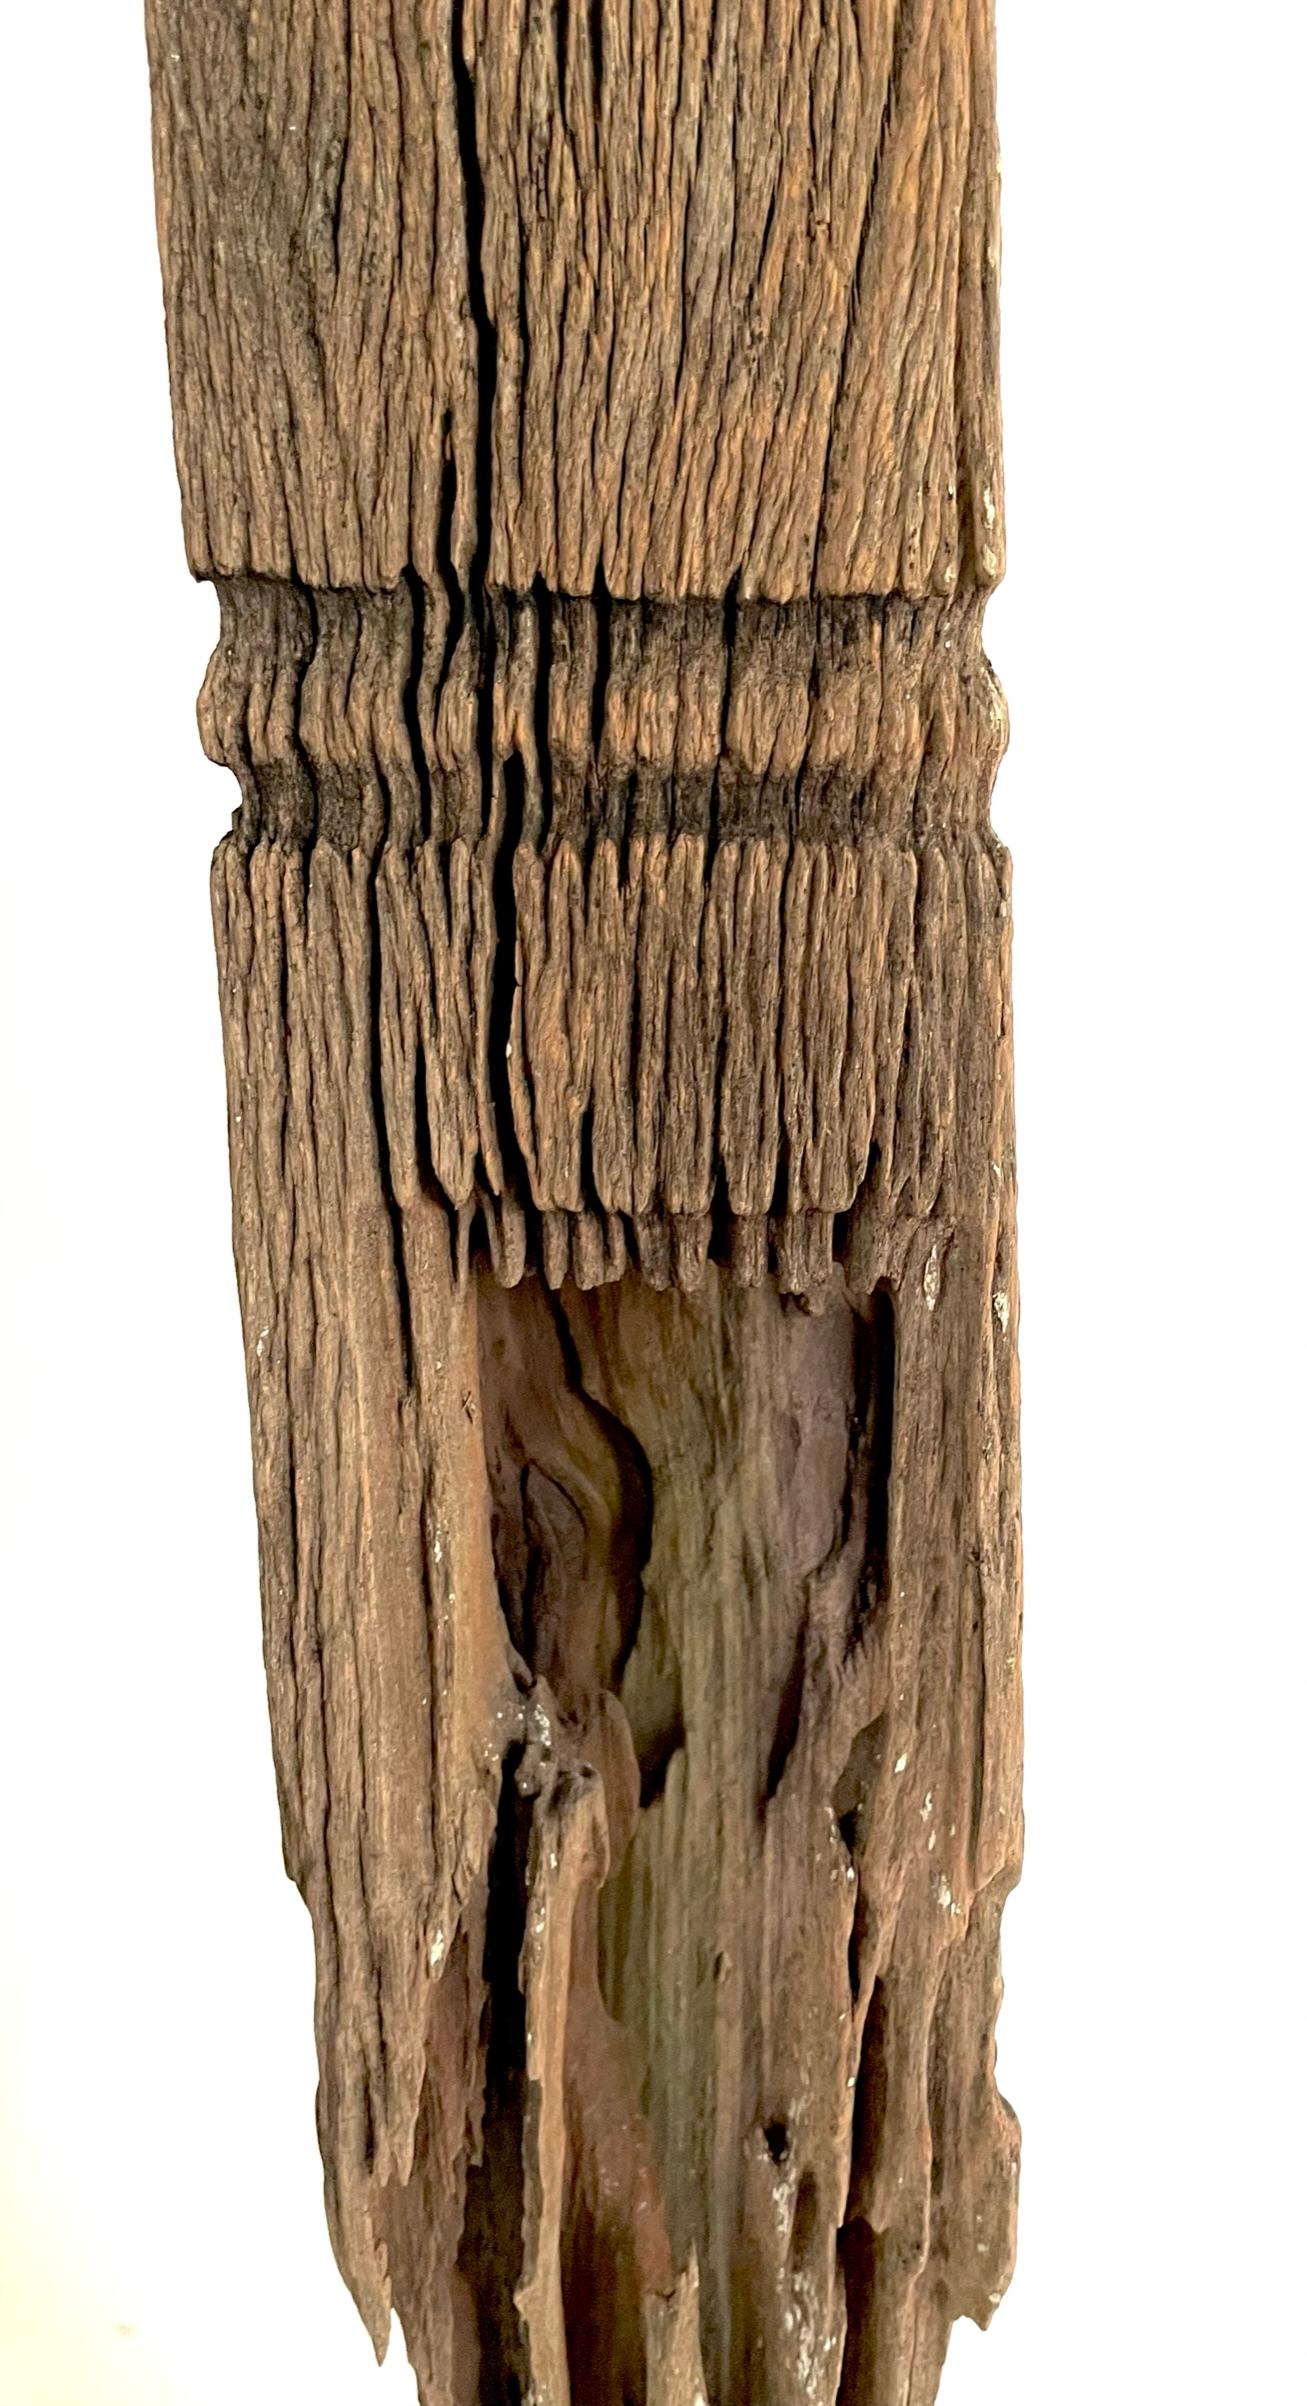 Eine seltene thailändische Holzschnitzerei aus dem 19. Jahrhundert, die aus dem Kernholz des Teakbaums hergestellt wurde. Diese Stupa stammt aus der Isan-Region in Thailand (Nordthailand, Westlaos). Diese fein gearbeitete Stupa (ein kleines Modell